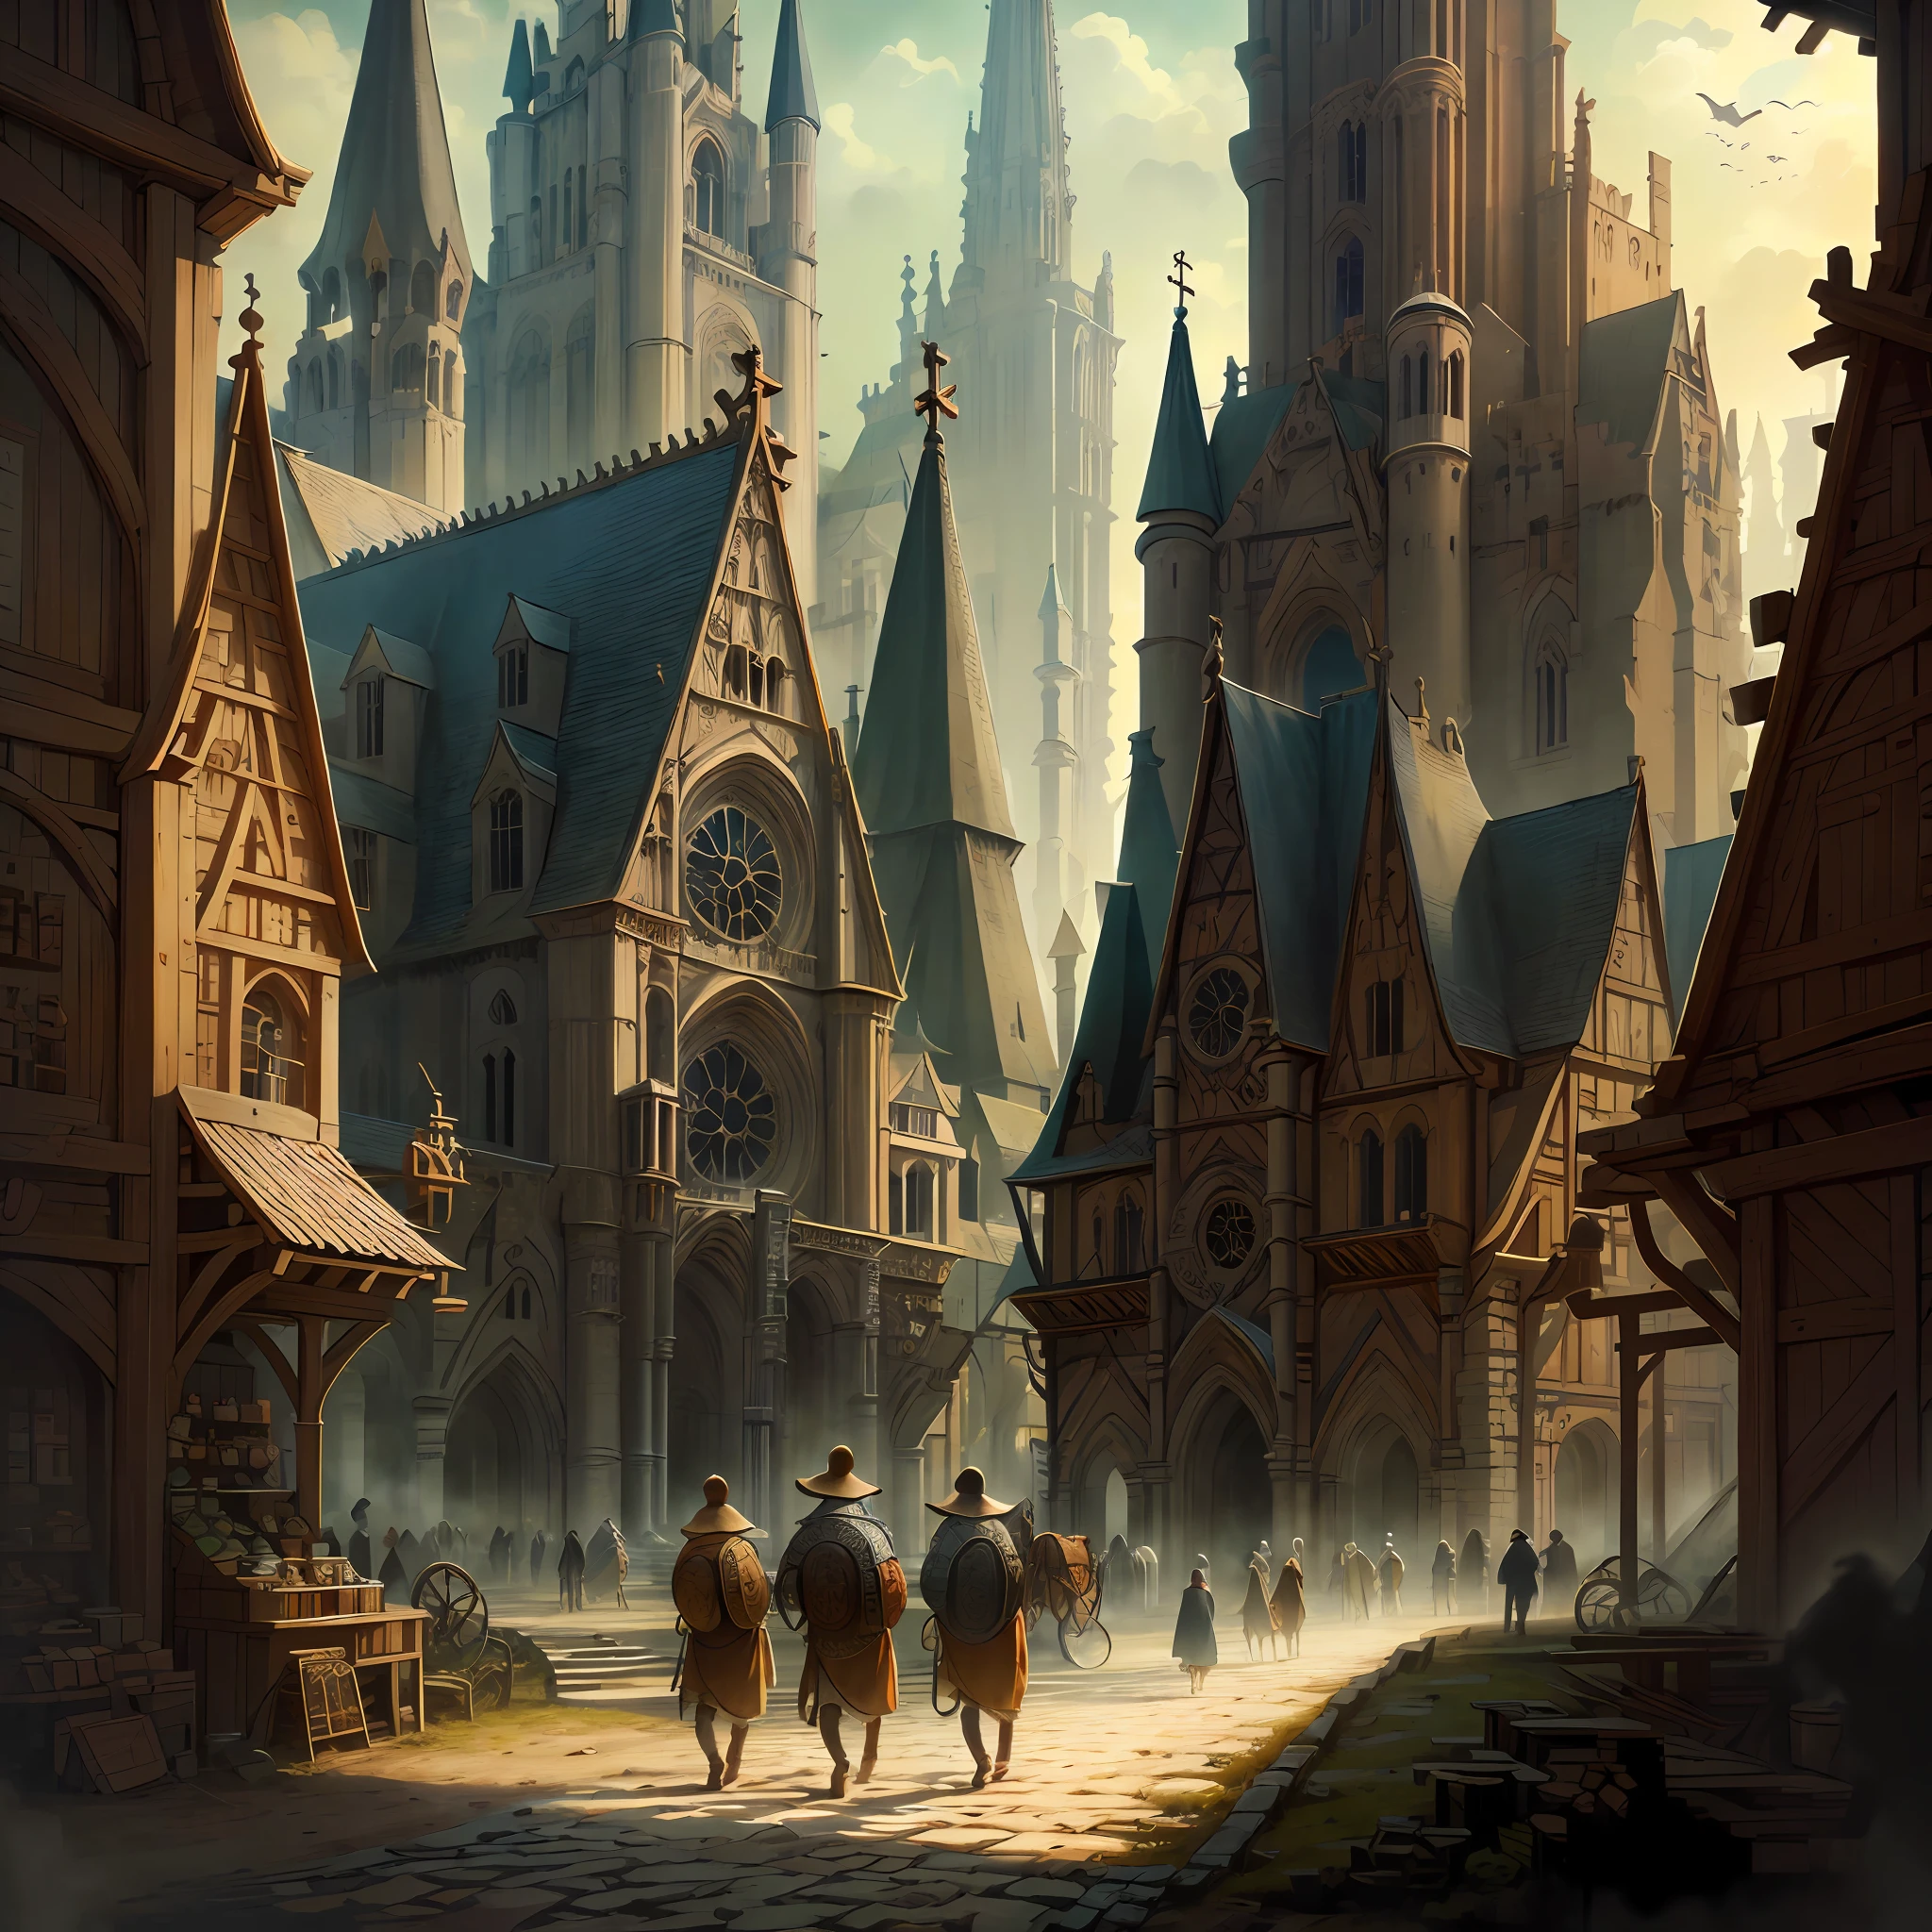 Bela ilustração de uma catedral medieval, povo medieval andando pelas ruas, detalhado, Intrincado.